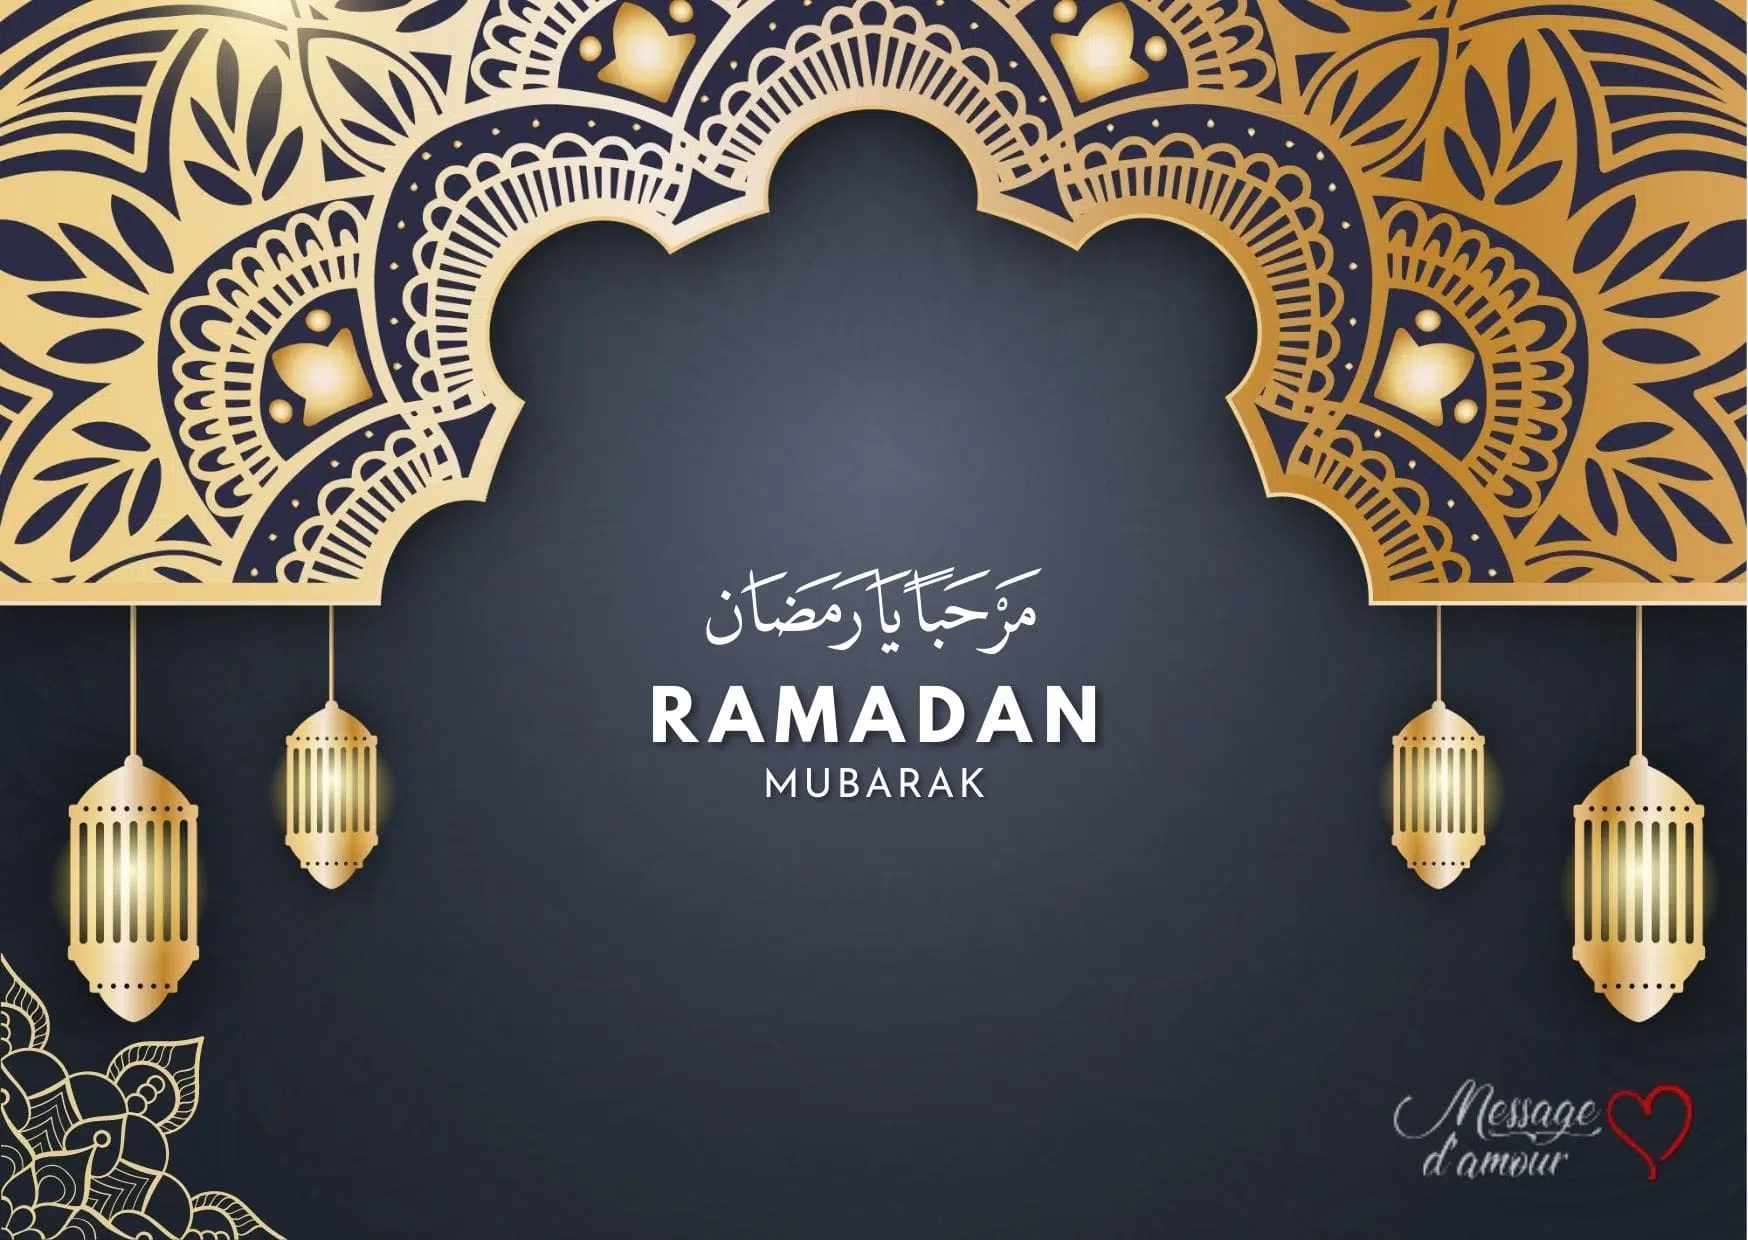 Marhaban Ya ramadan Ramadan mubarak